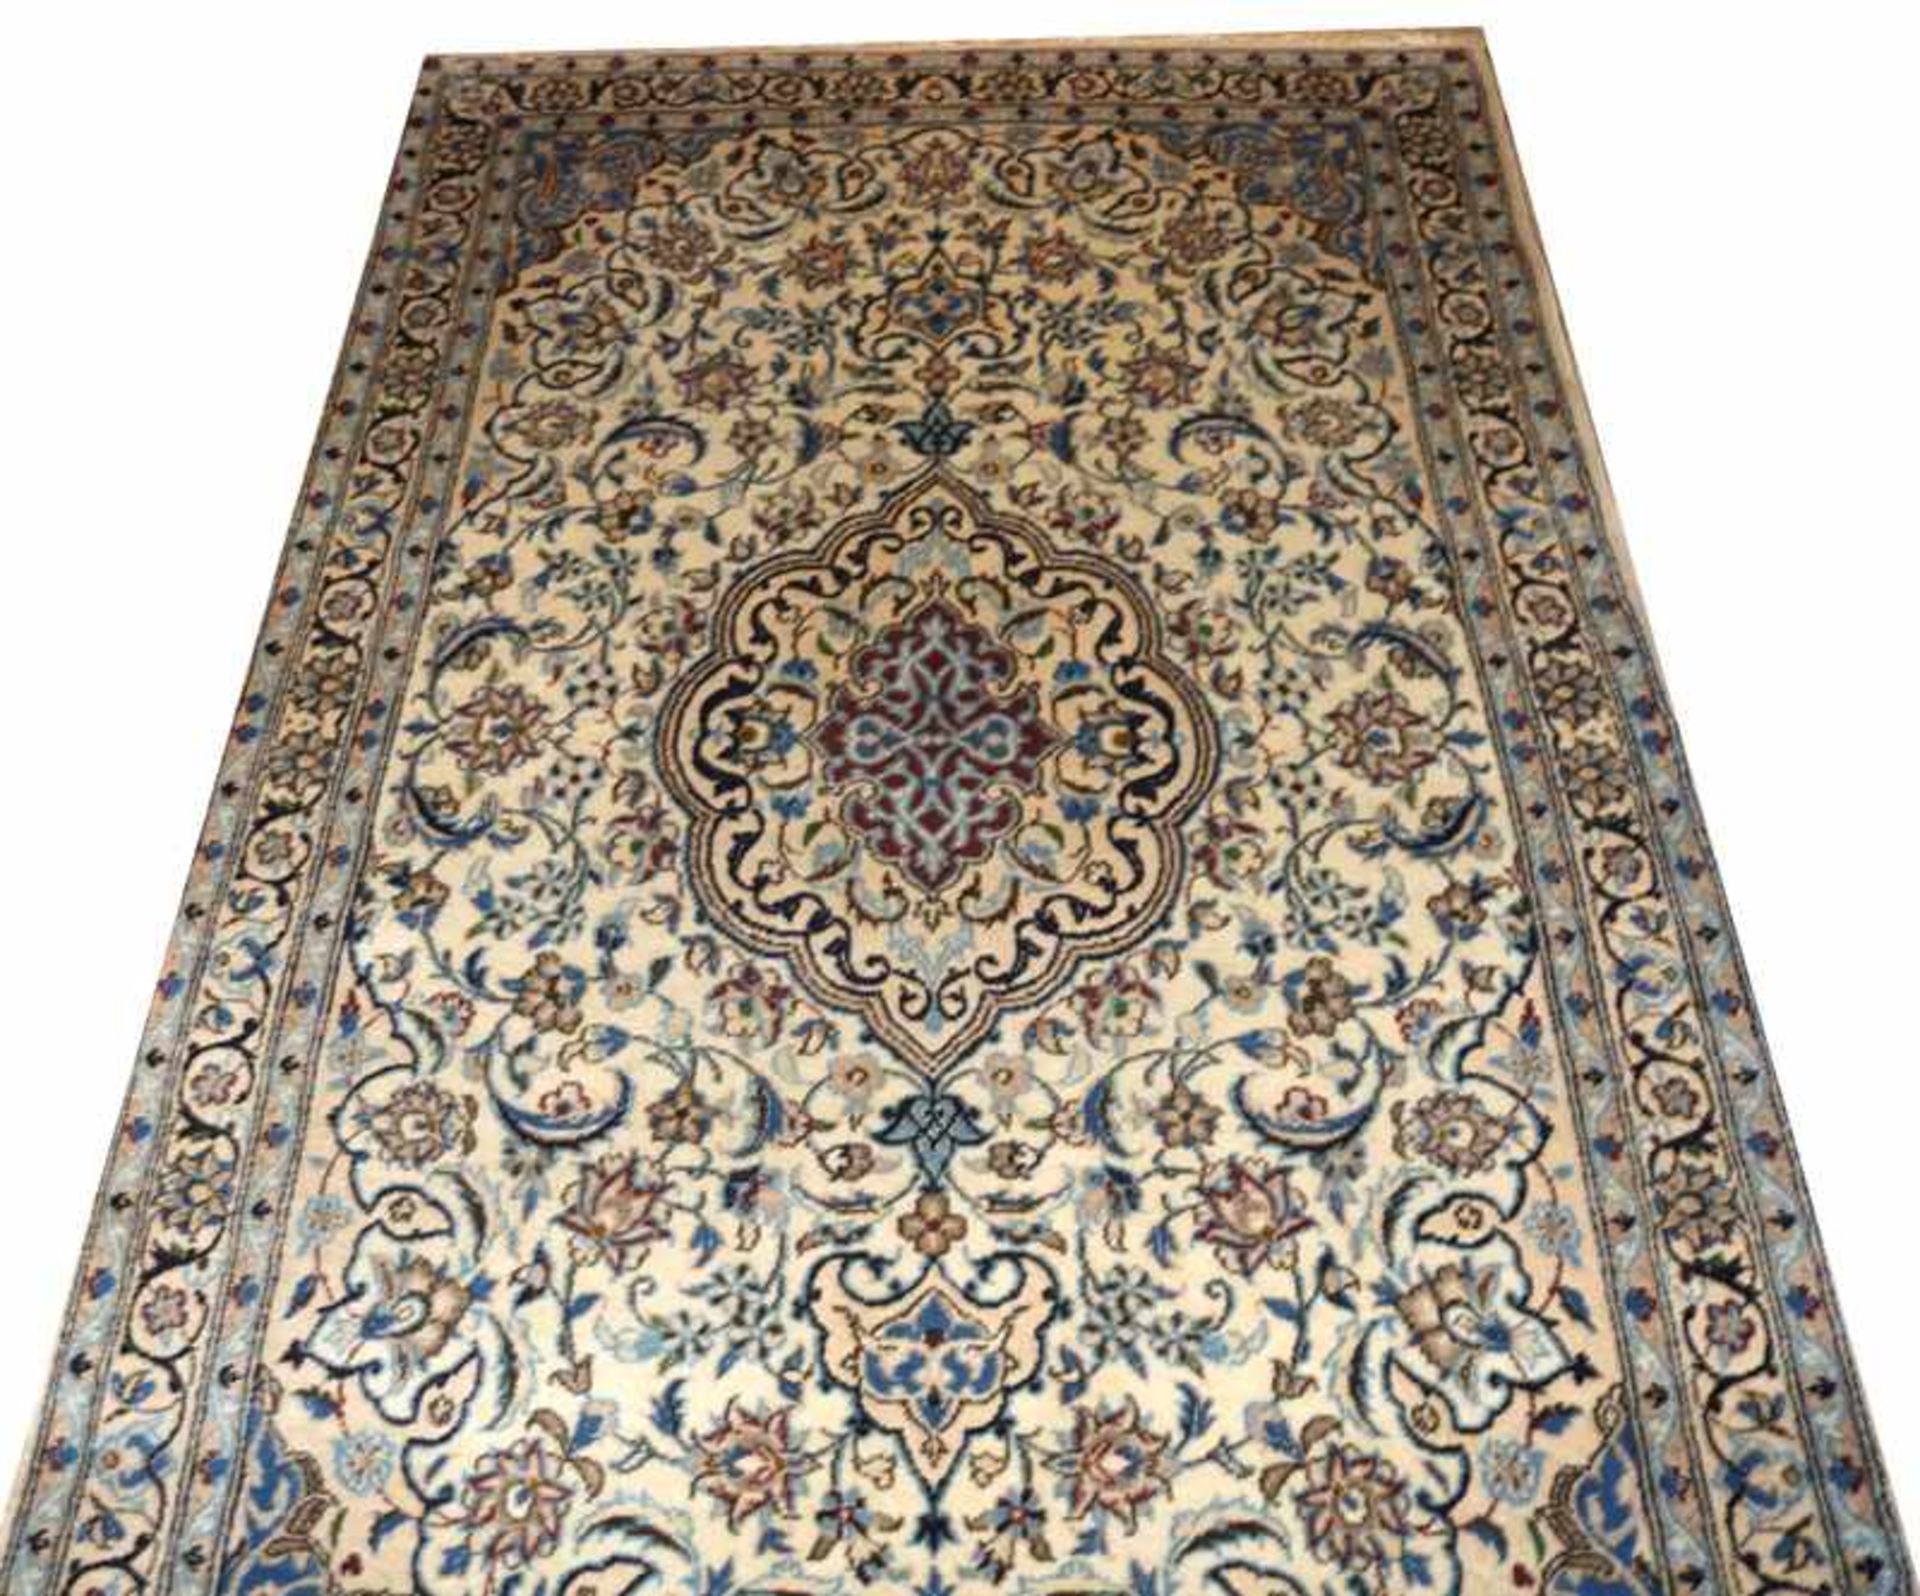 Teppich, Isfahan, beige/braun/bunt, Gebrauchsspuren, 372 cm x 265 cm, Gebrauchsspuren, fleckig